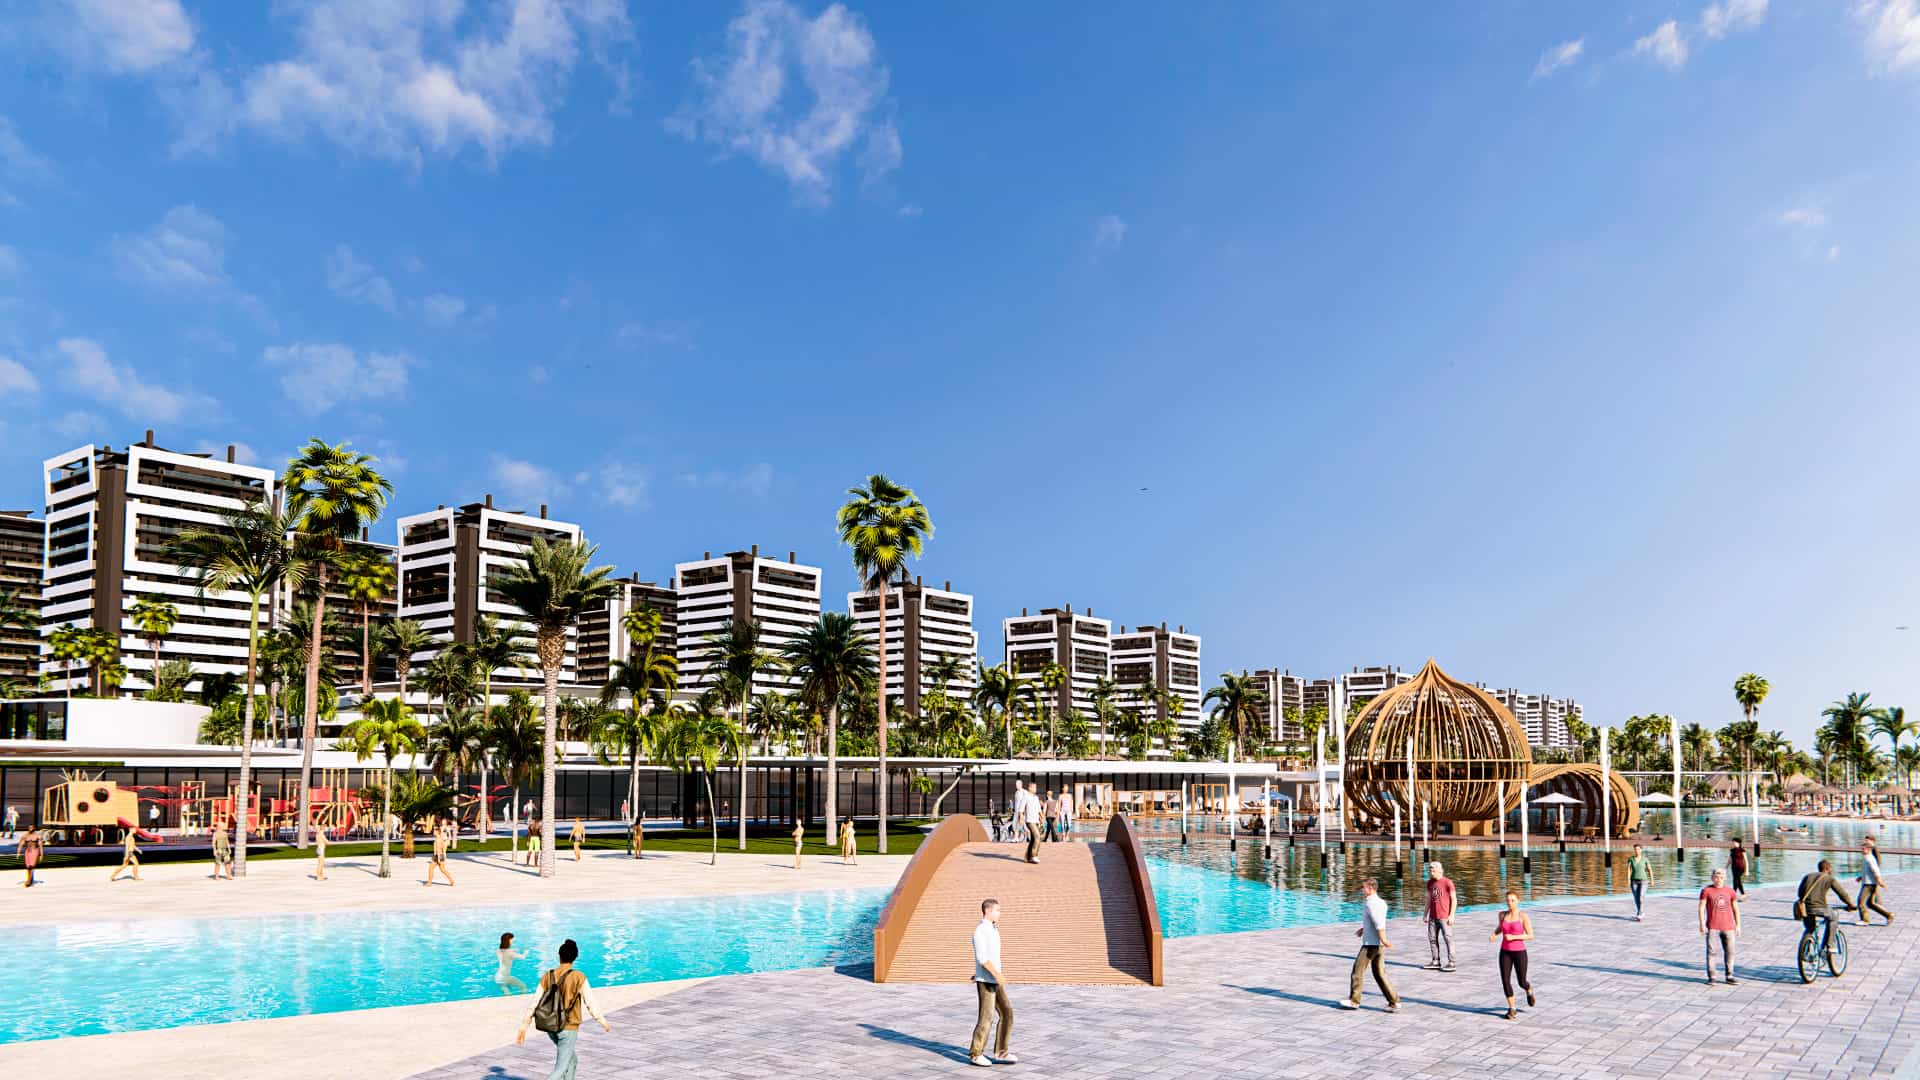 Grupo español Clerhp en alianza con Sonesta abrira complejo de lujos en Punta Cana, R.D.